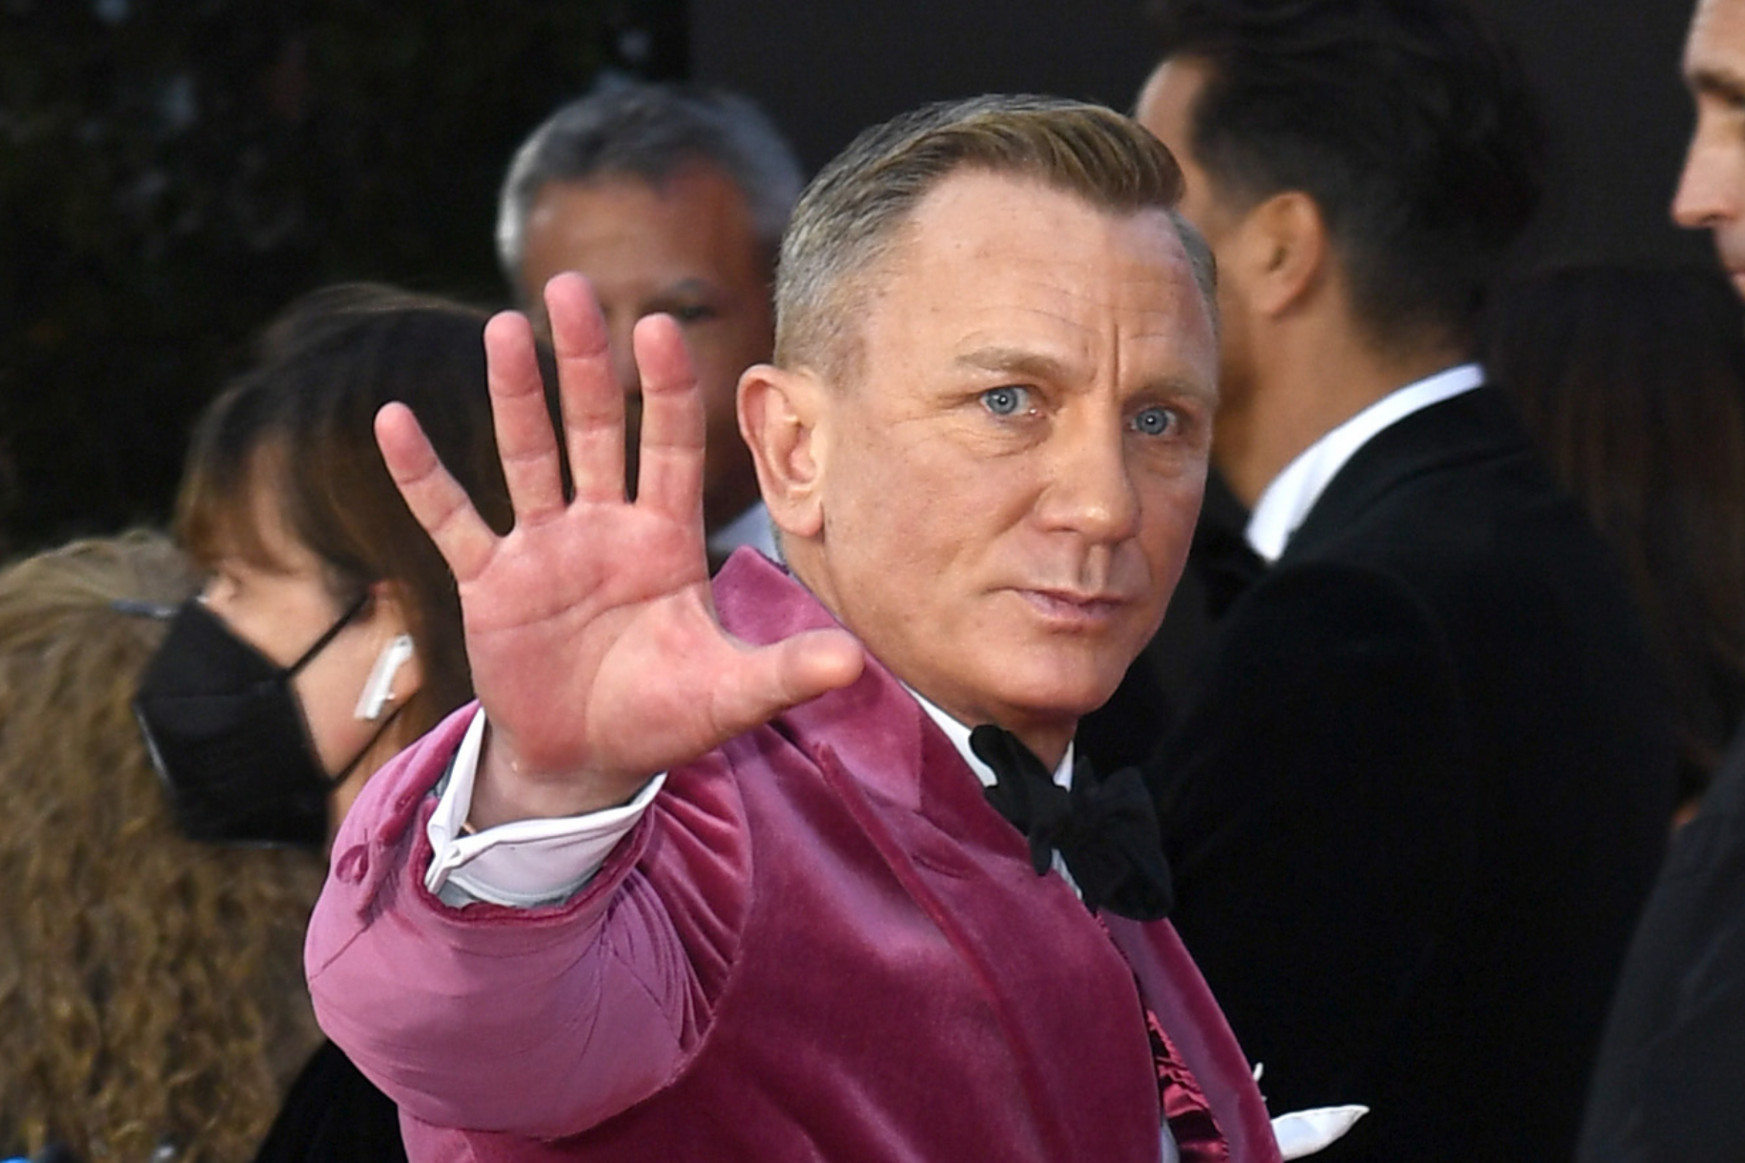 Daniel Craig azért jár melegbárokba, hogy elkerülje az agresszív férfiakat